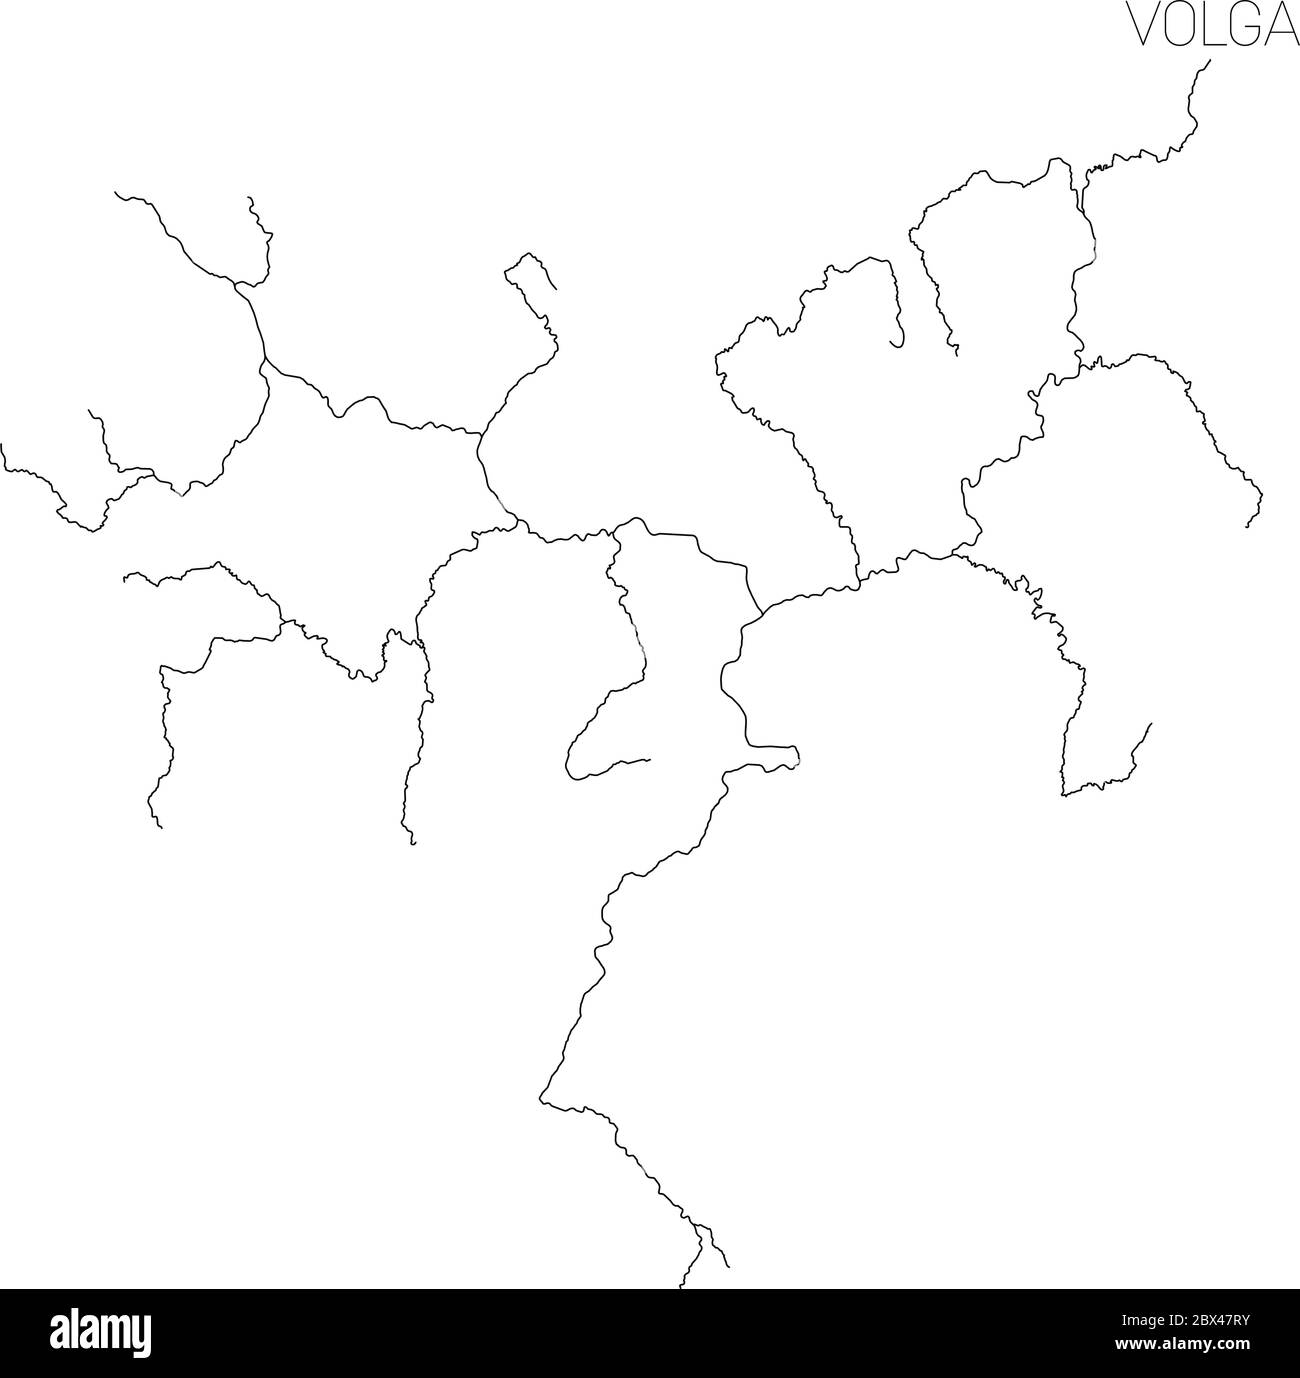 Mapa de la cuenca hidrográfica del río Volga. Ilustración simple de vector de contorno delgado. Ilustración del Vector